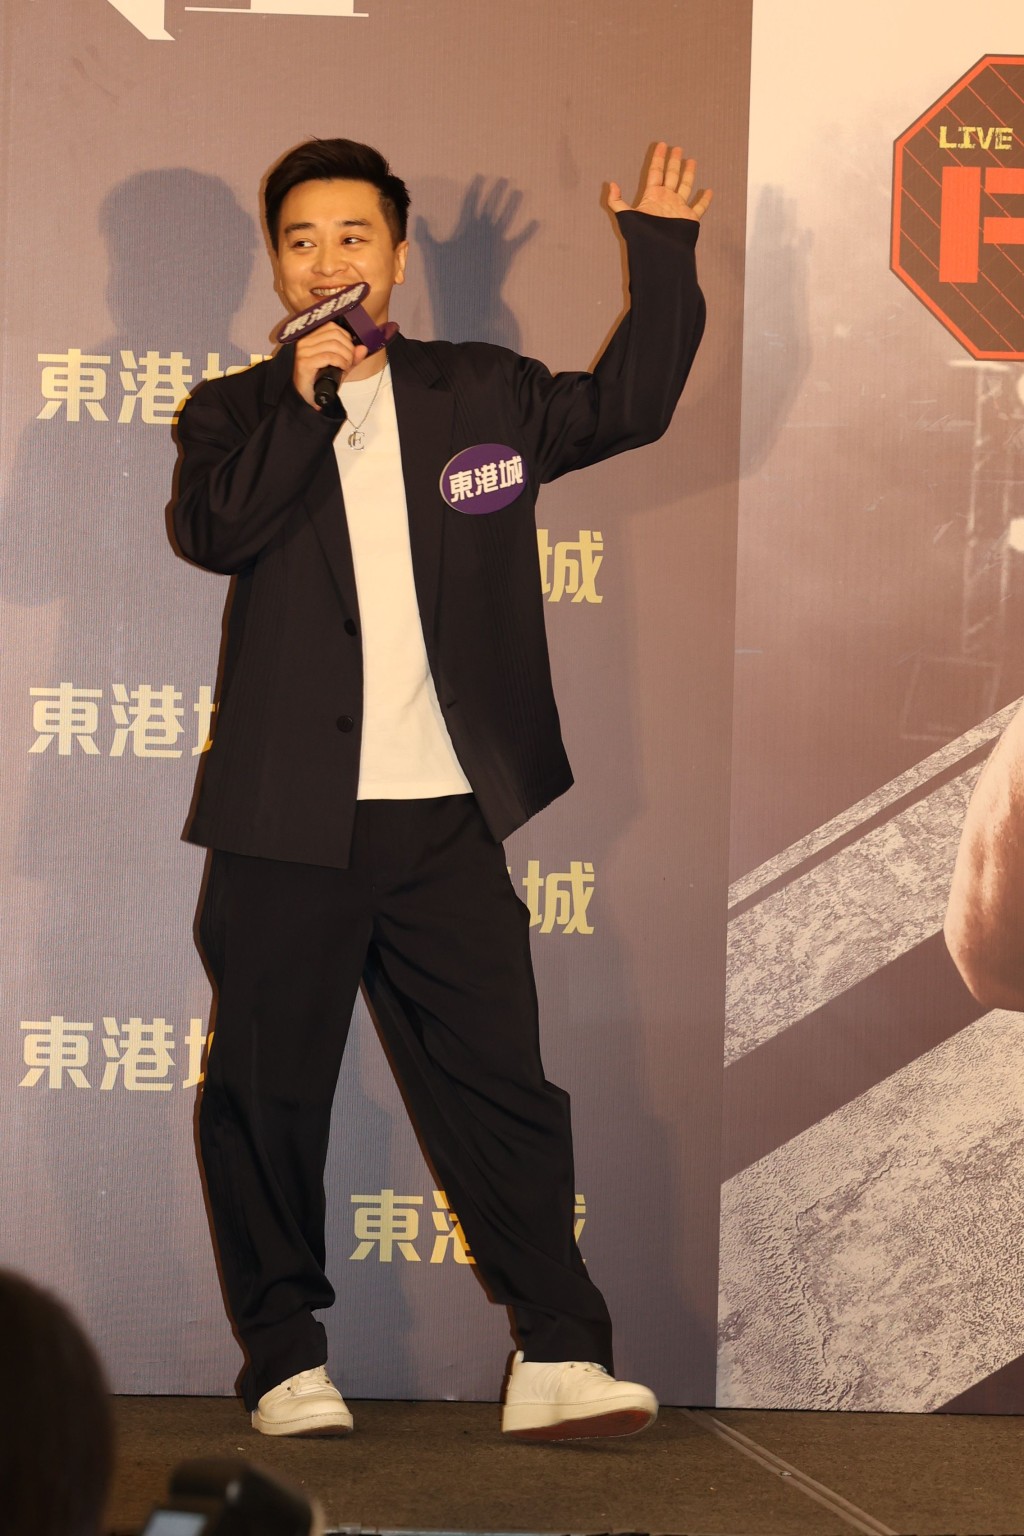 譚輝智將於本月26日九龍灣國際展貿中心舉行《譚輝智FIGHT FOR YOU演唱會》。